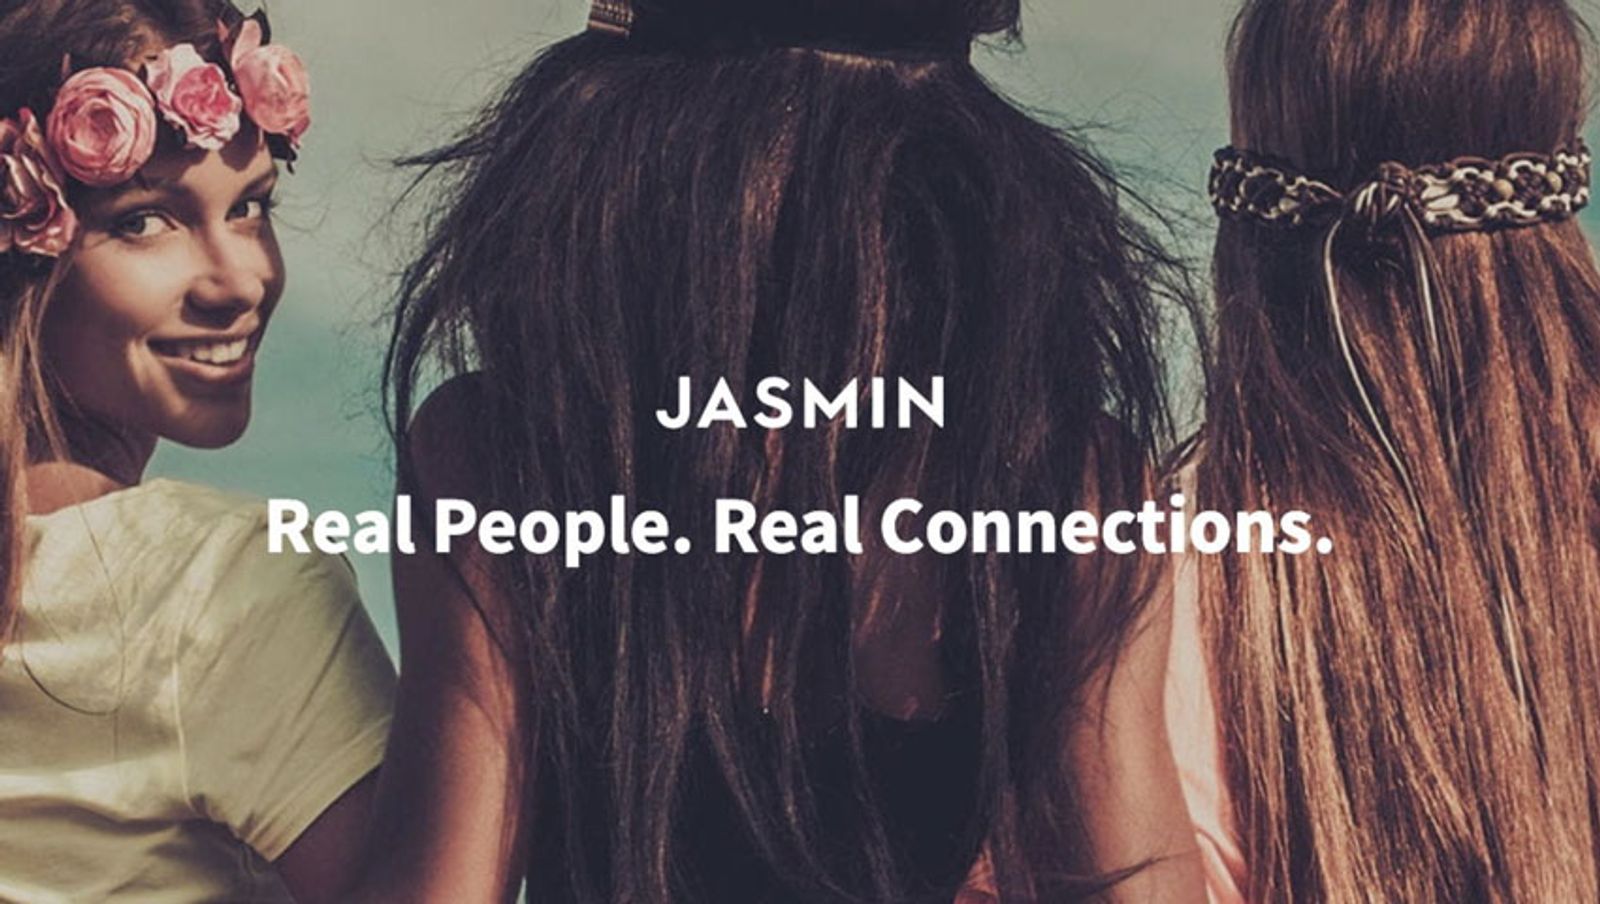 Jasmin.com Goes Influencer Based; Pamela Anderson Tapped